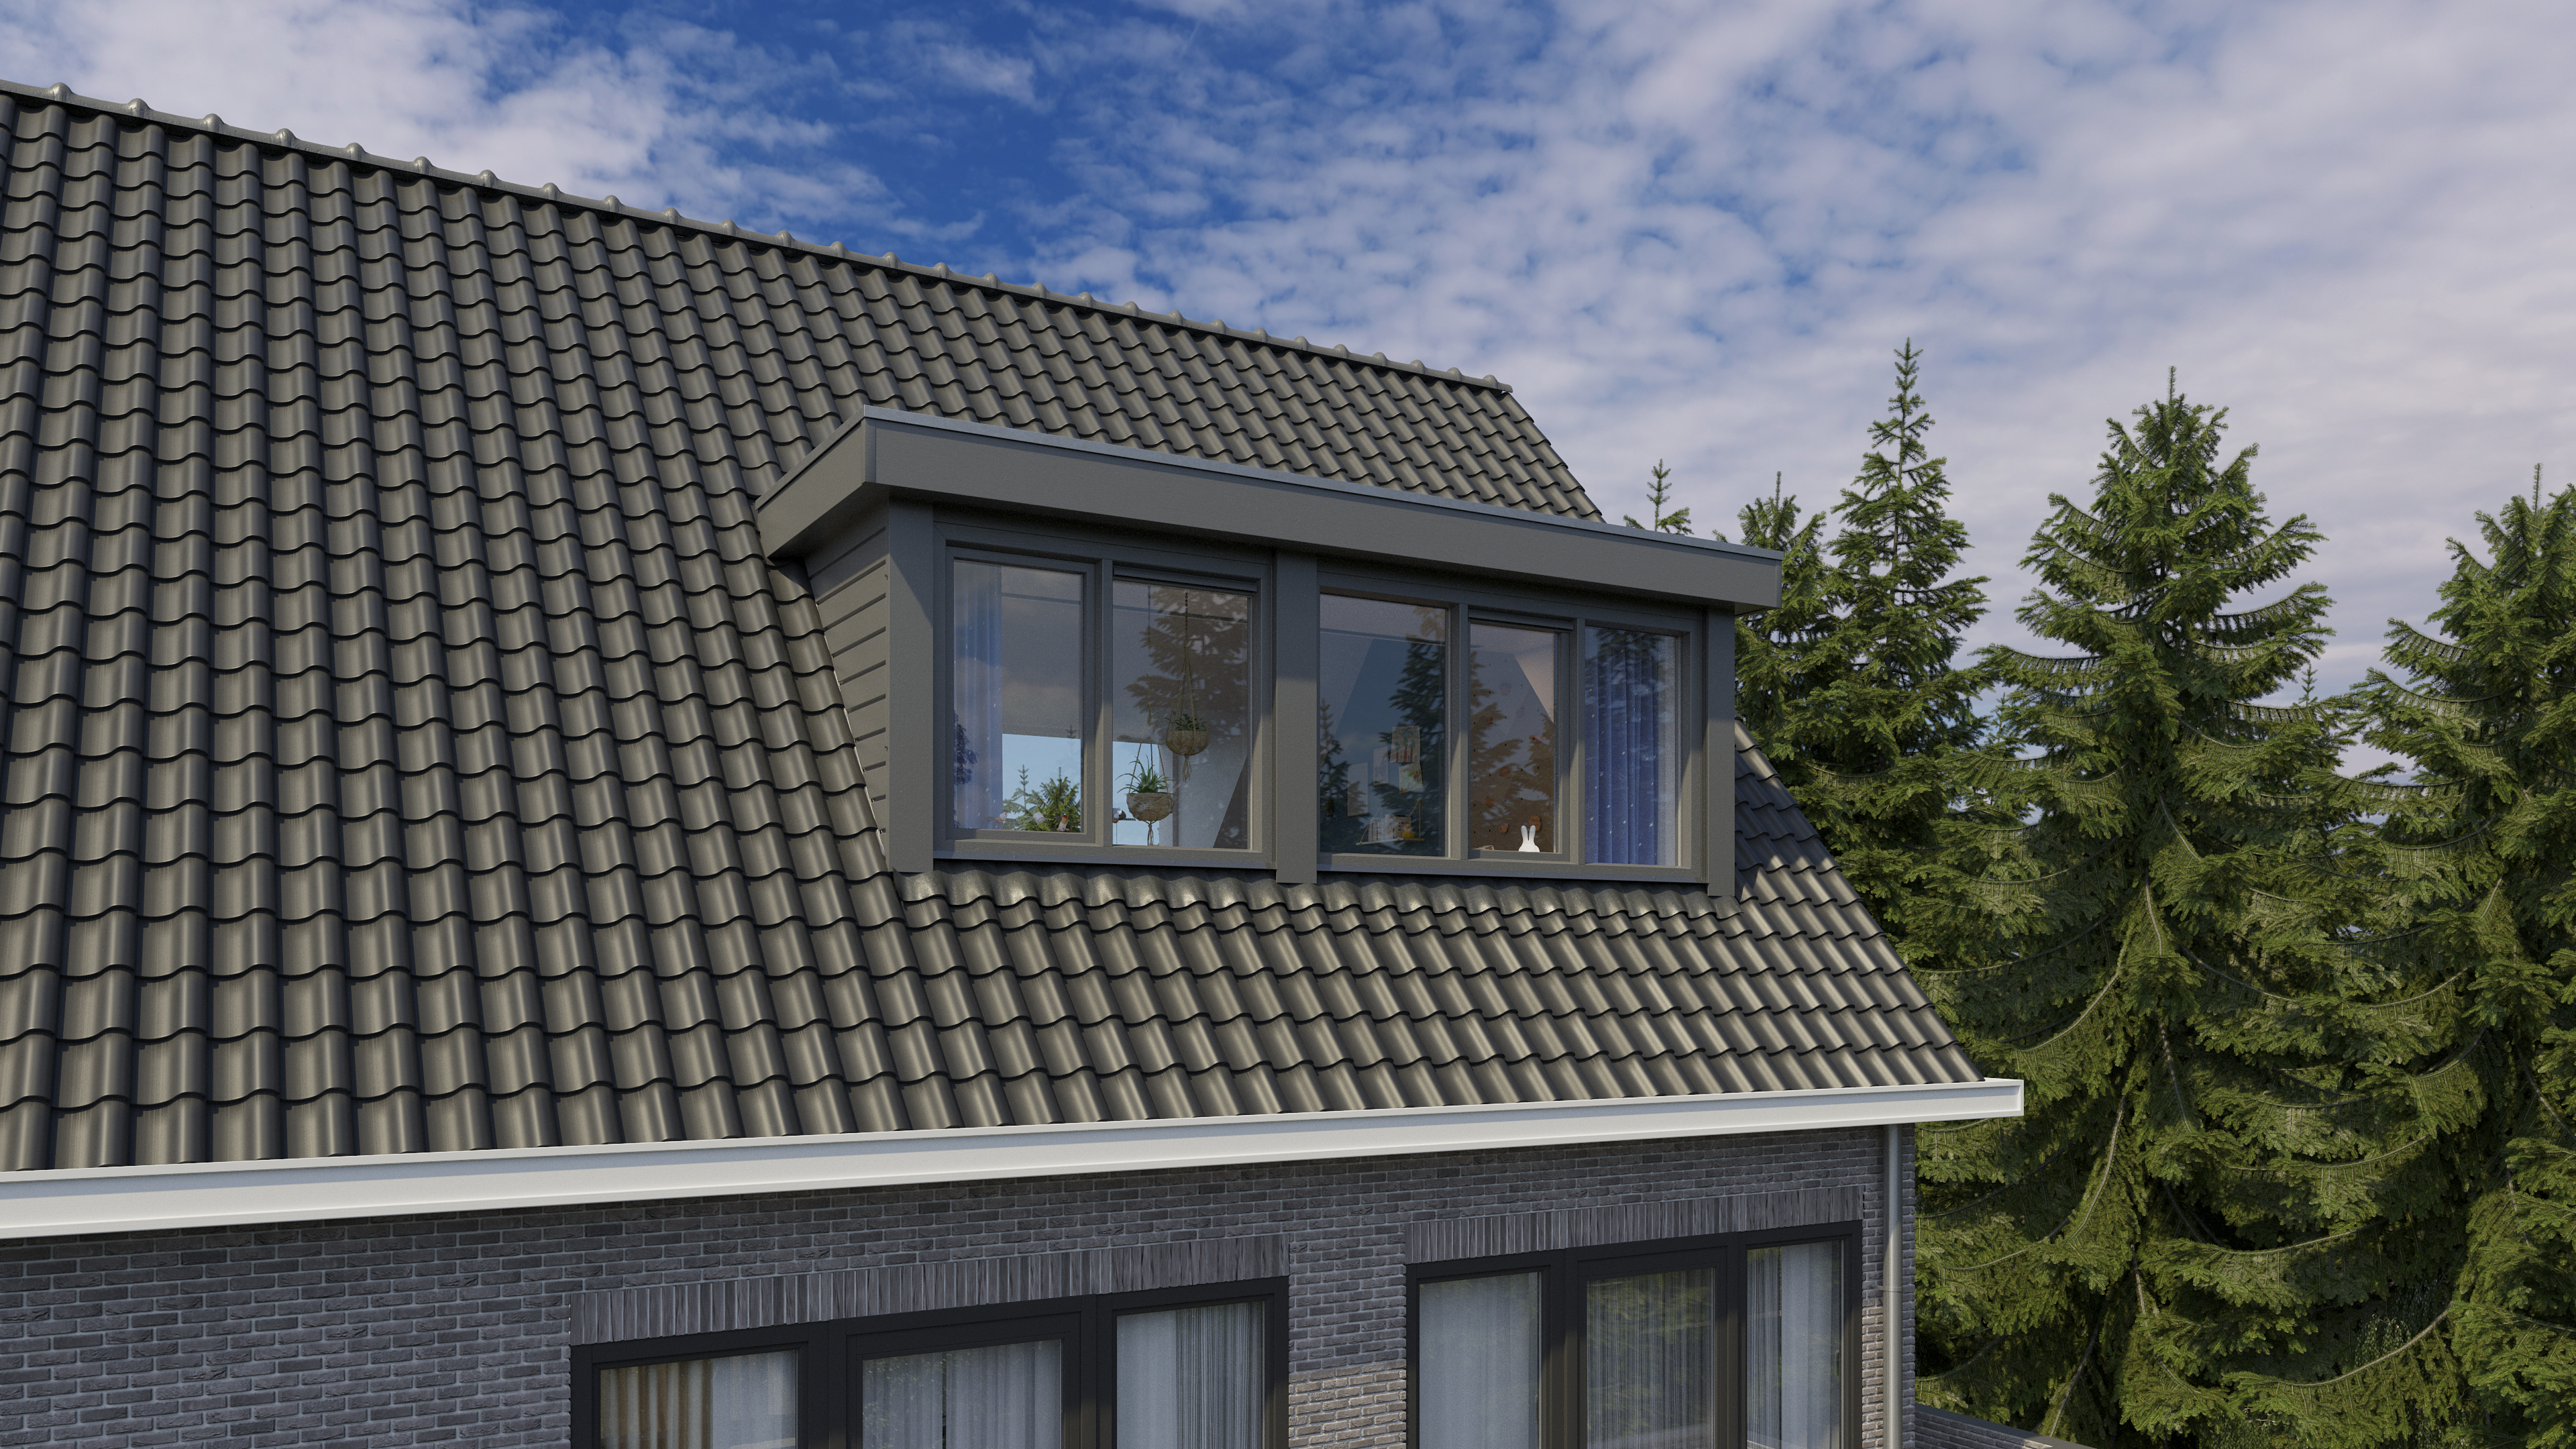 Wat kost een dakkapel van 5 meter of meer? Zwarte dakkapel plat dak modern 5 meter.